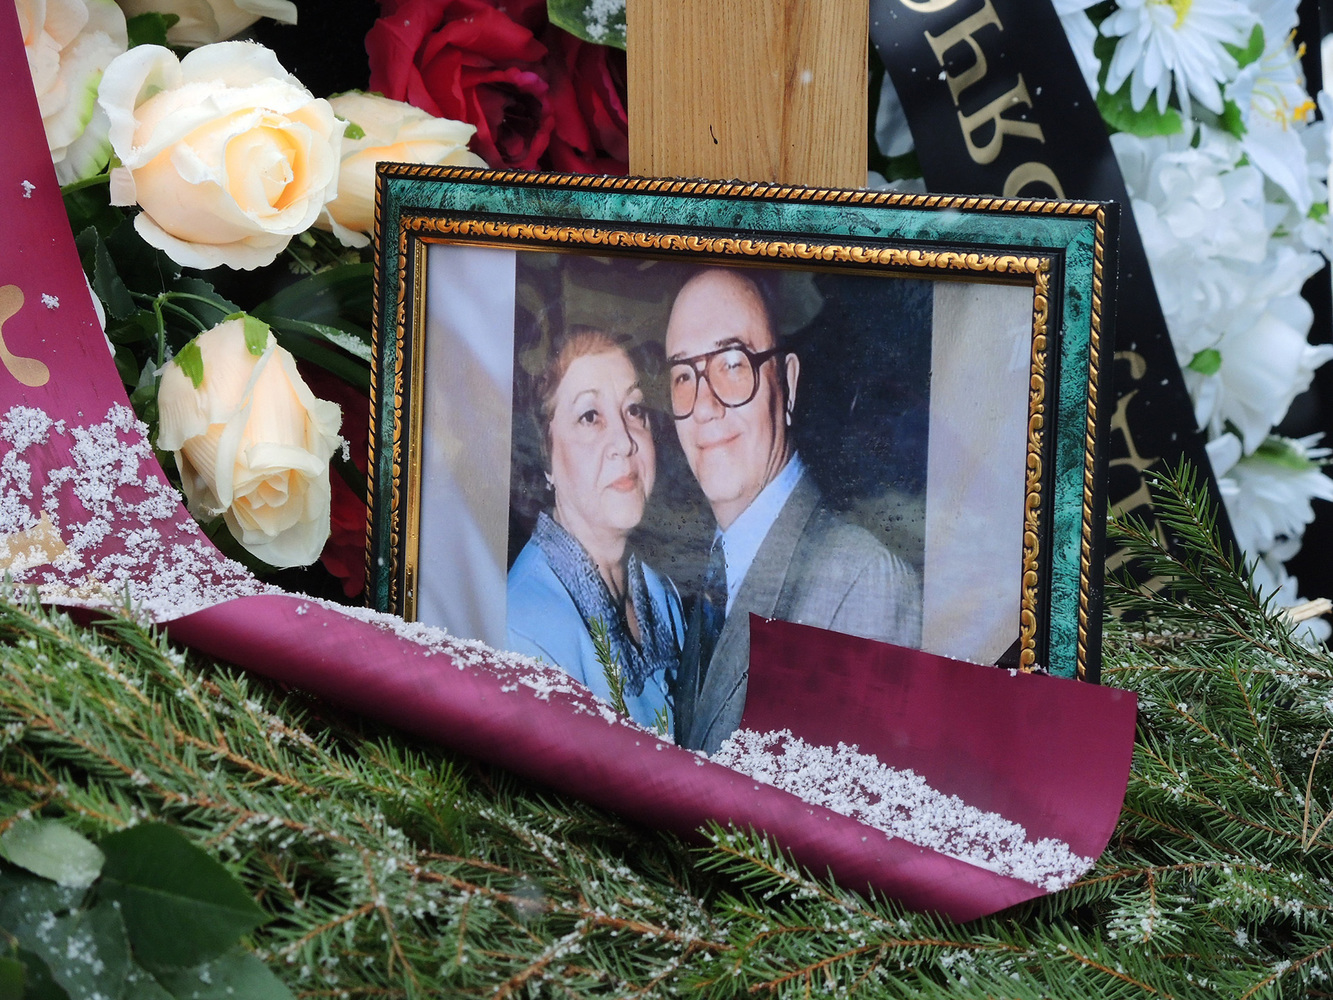 Появились фото семейной могилы Леонида Куравлева на Троекуровском кладбище